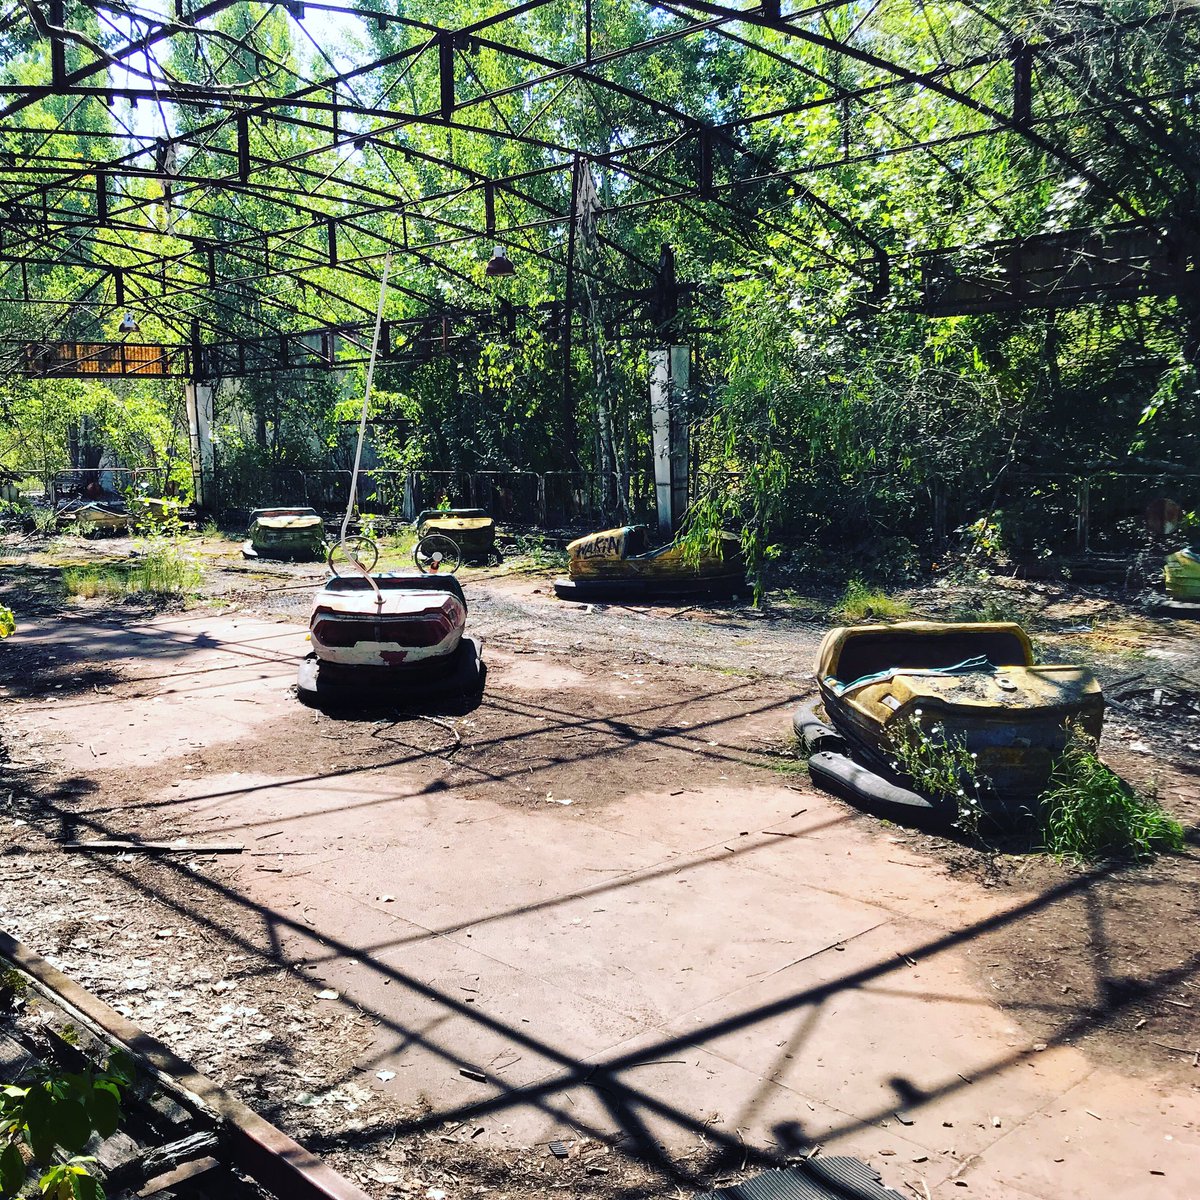 Et l’on débouche sur le parc d’attraction qui n’a jamais ouvert ses portes puisqu’il devait ouvrir environ une semaine après l’explosion.  #Tchernobyl  (Plus de photos:  http://Instagram.com/nashtagstagram )